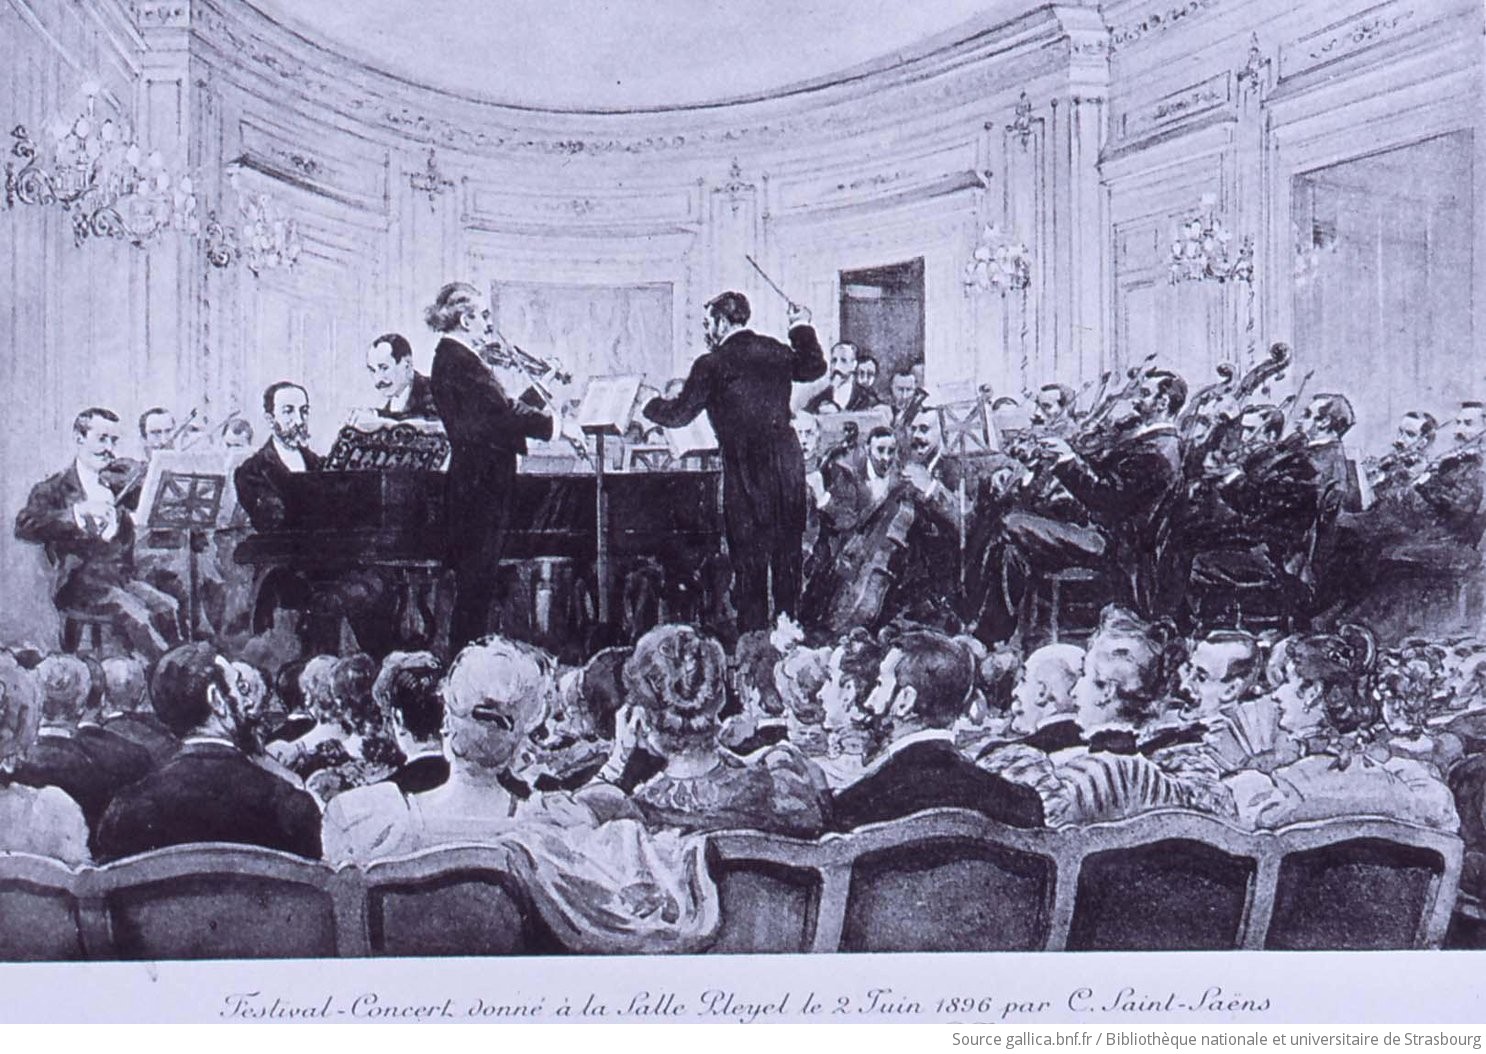 Camille Saint-Saëns : [Avec Pablo de Sarasate et Paul Taffanel, lors de son Festival-concert donné à la salle Pleyel le 2 juin 1896, à l'occasion du cinquantenaire de son premier concert dans cette même salle en 1846]